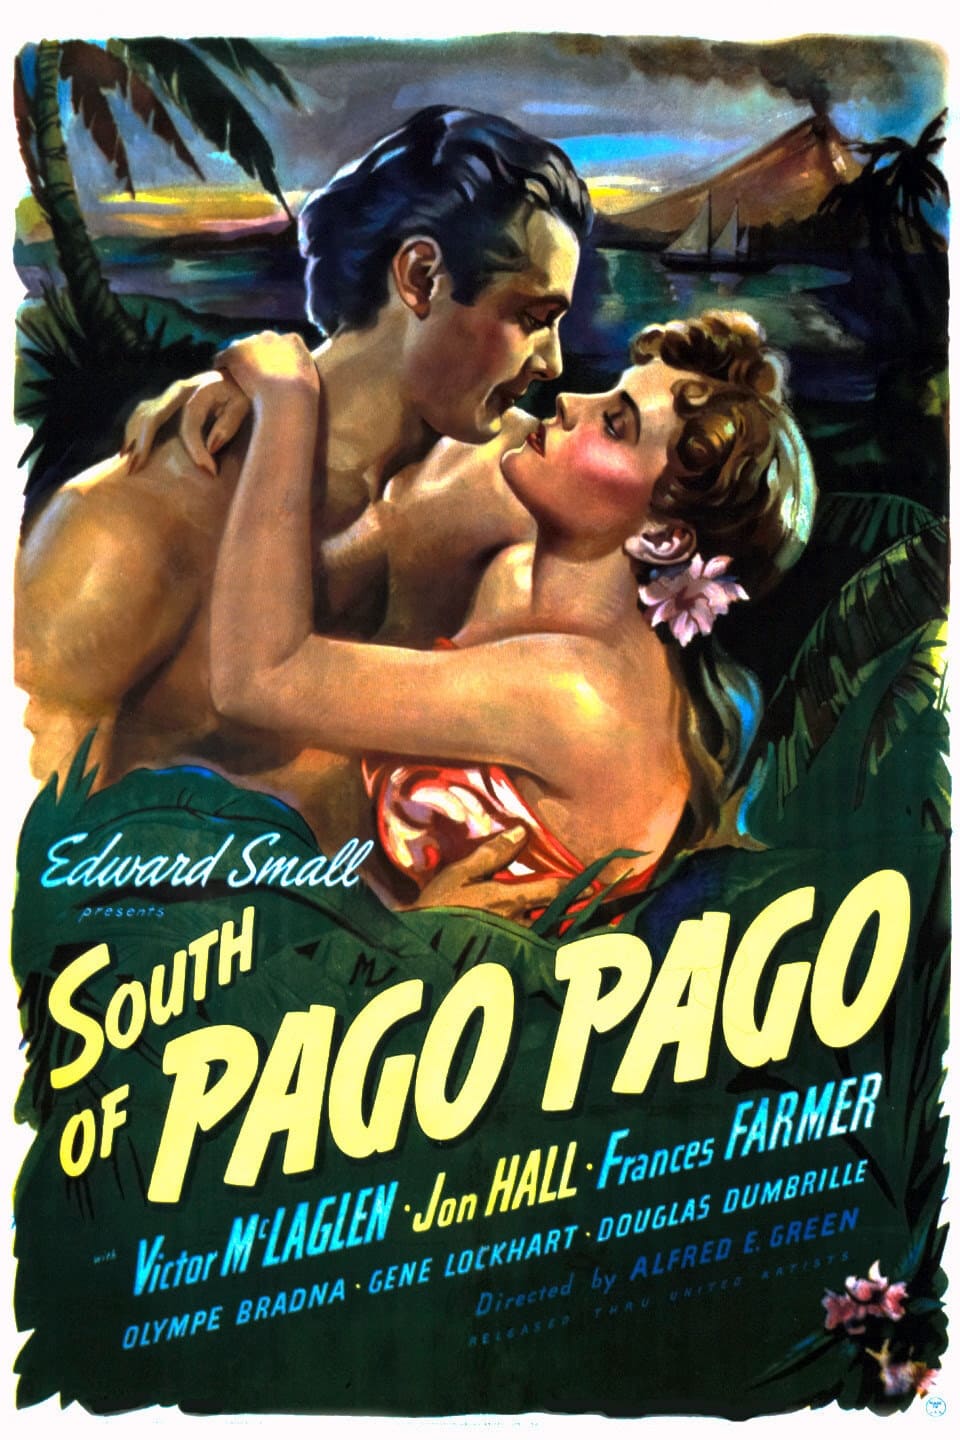 South of Pago Pago